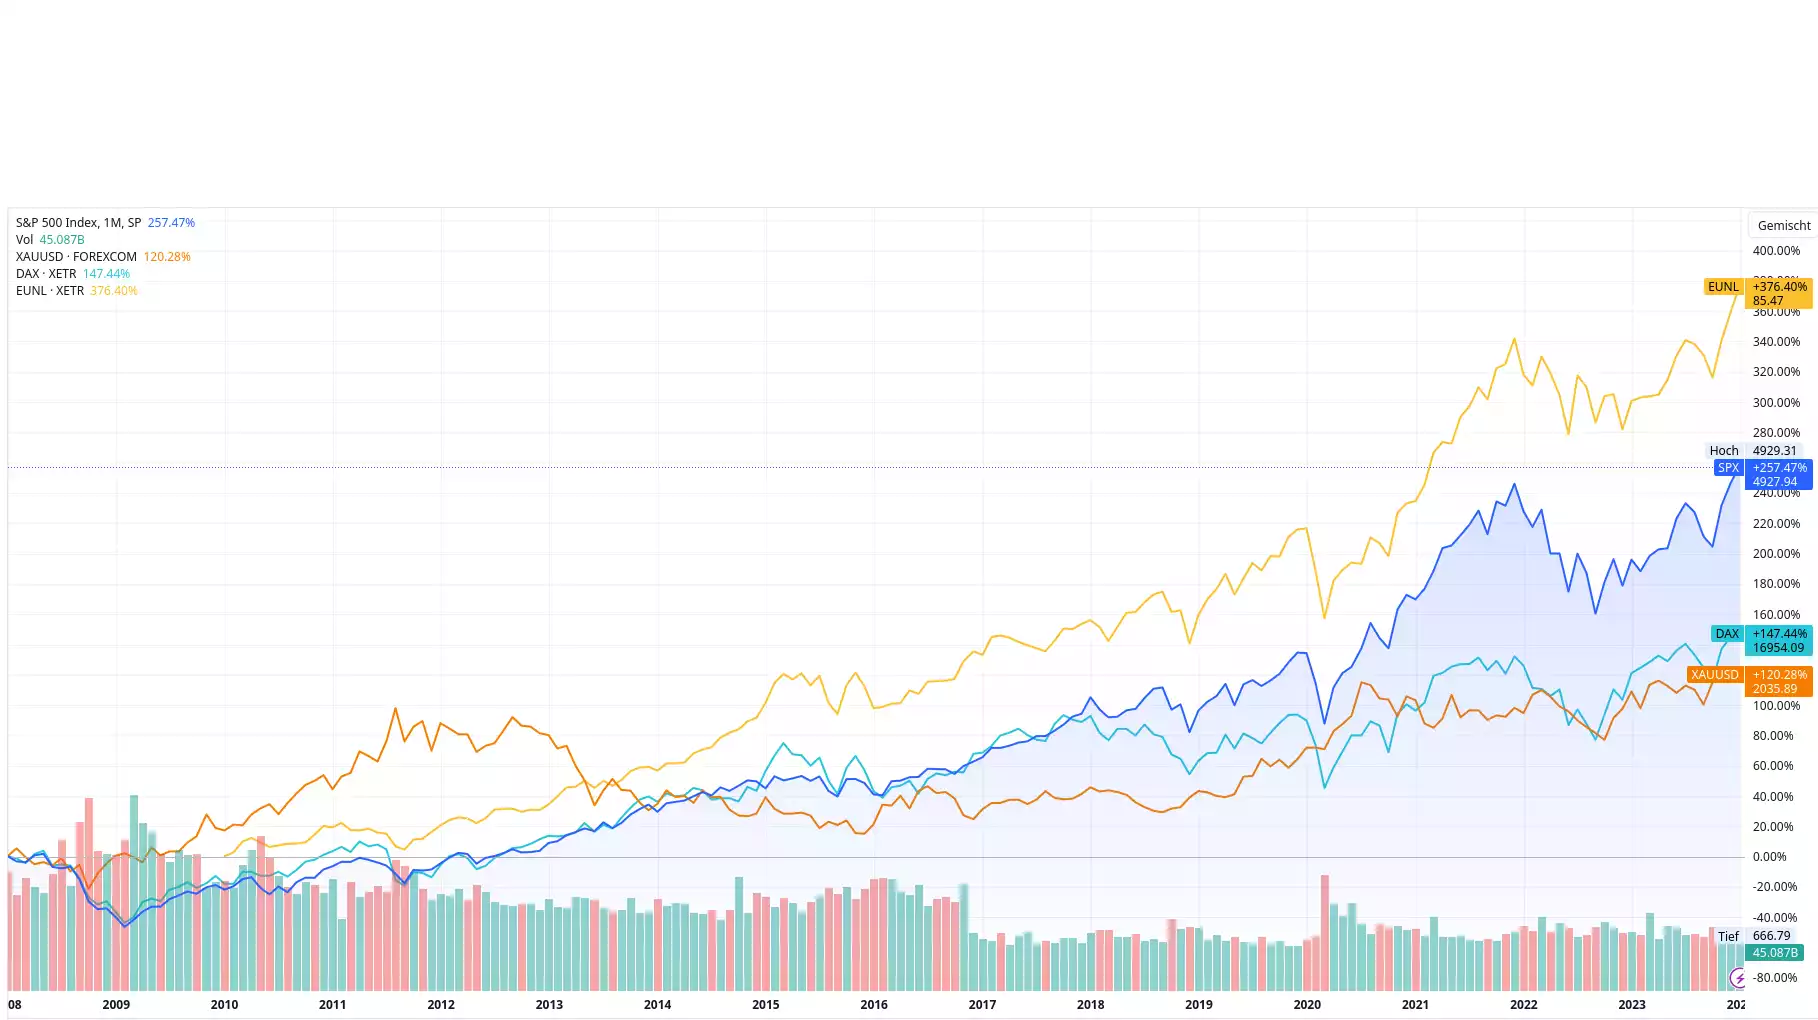 2008 bis heute - Welt ETF wäre die beste Investition in diesem Vergleich gewesen, Gold die schlechteste